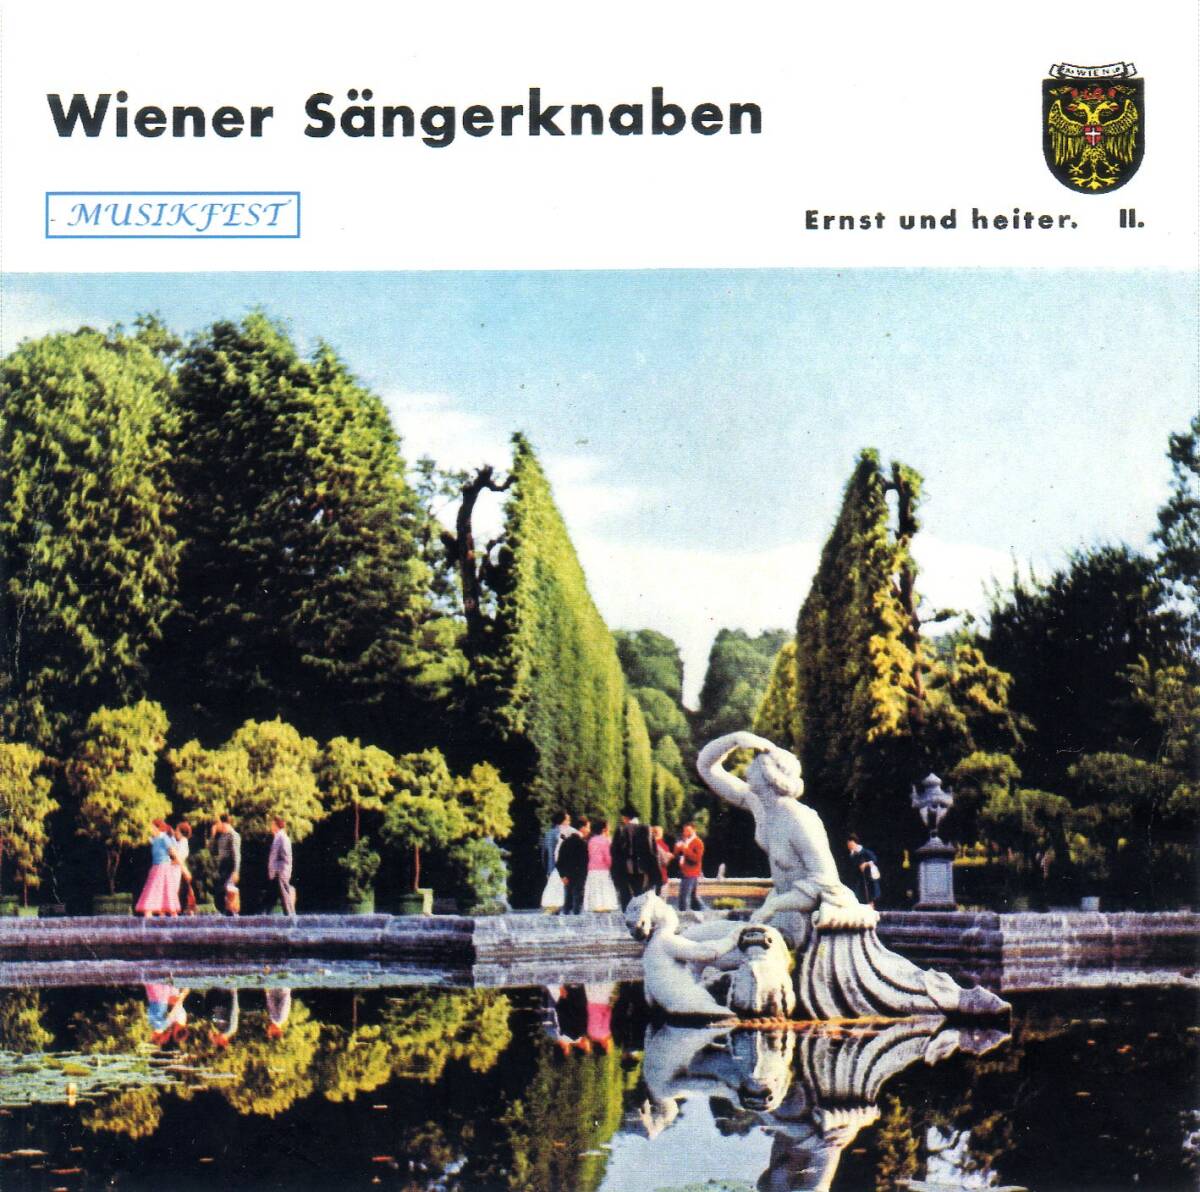  we n подросток ...*. год. название .*HMV. запись *Ernst und heiter~ no. 2 сборник (1958 год первый .)